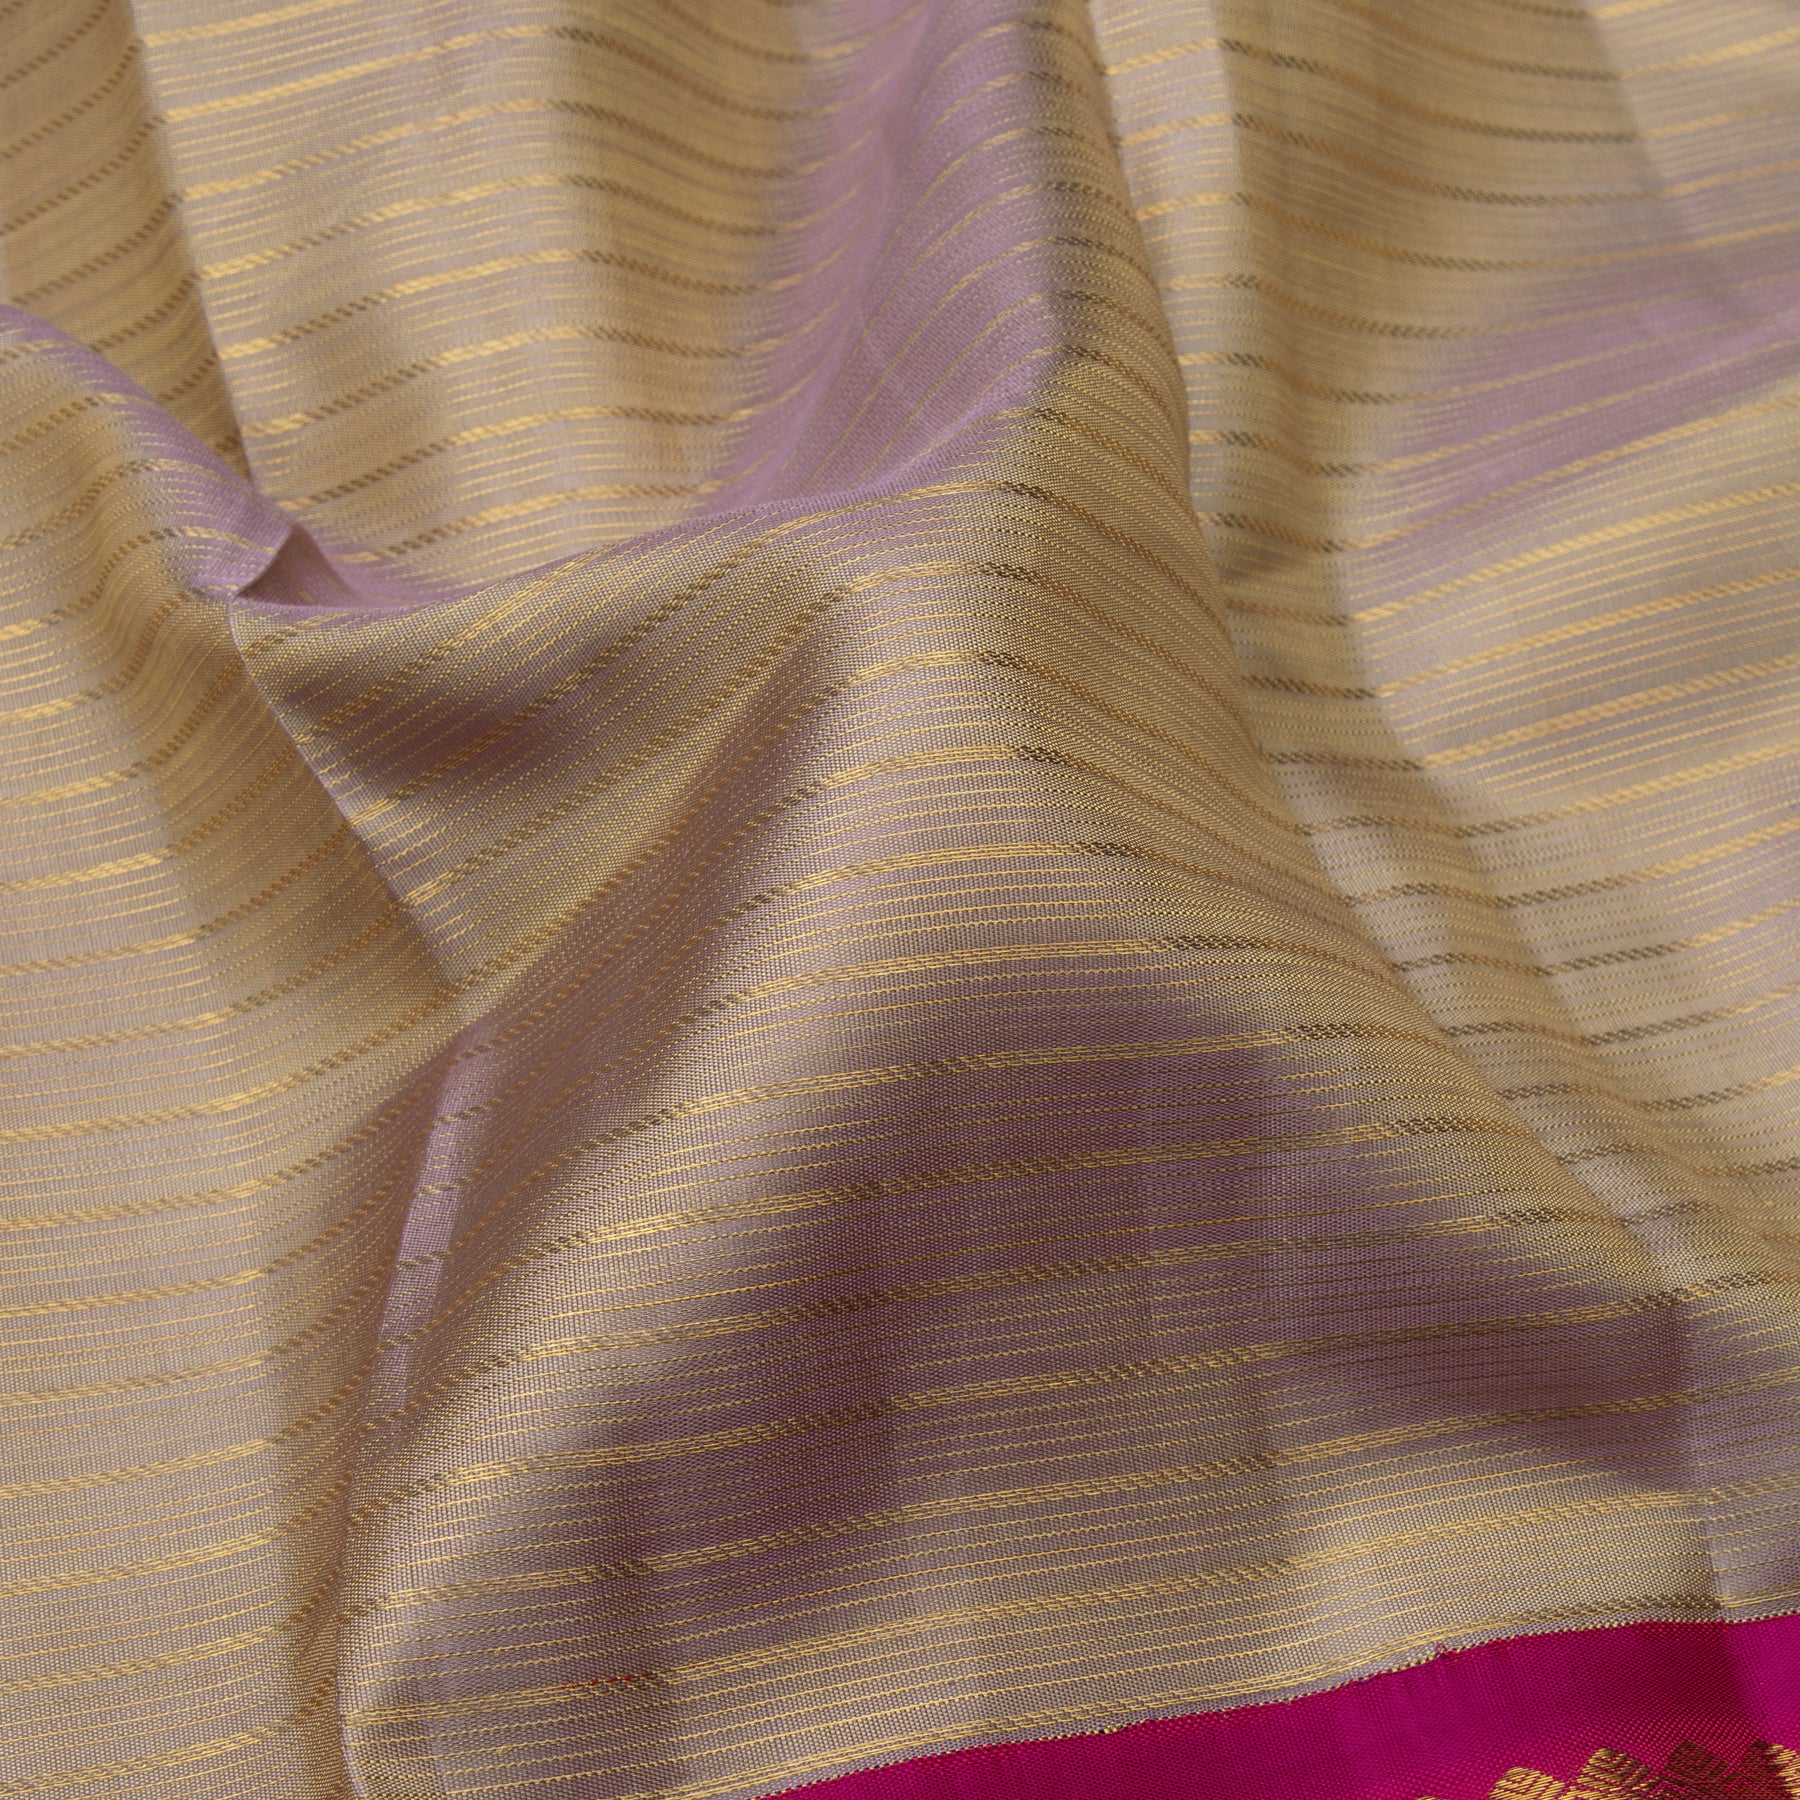 Kanakavalli Kanjivaram Silk Sari 23-595-HS001-13726 - Fabric View